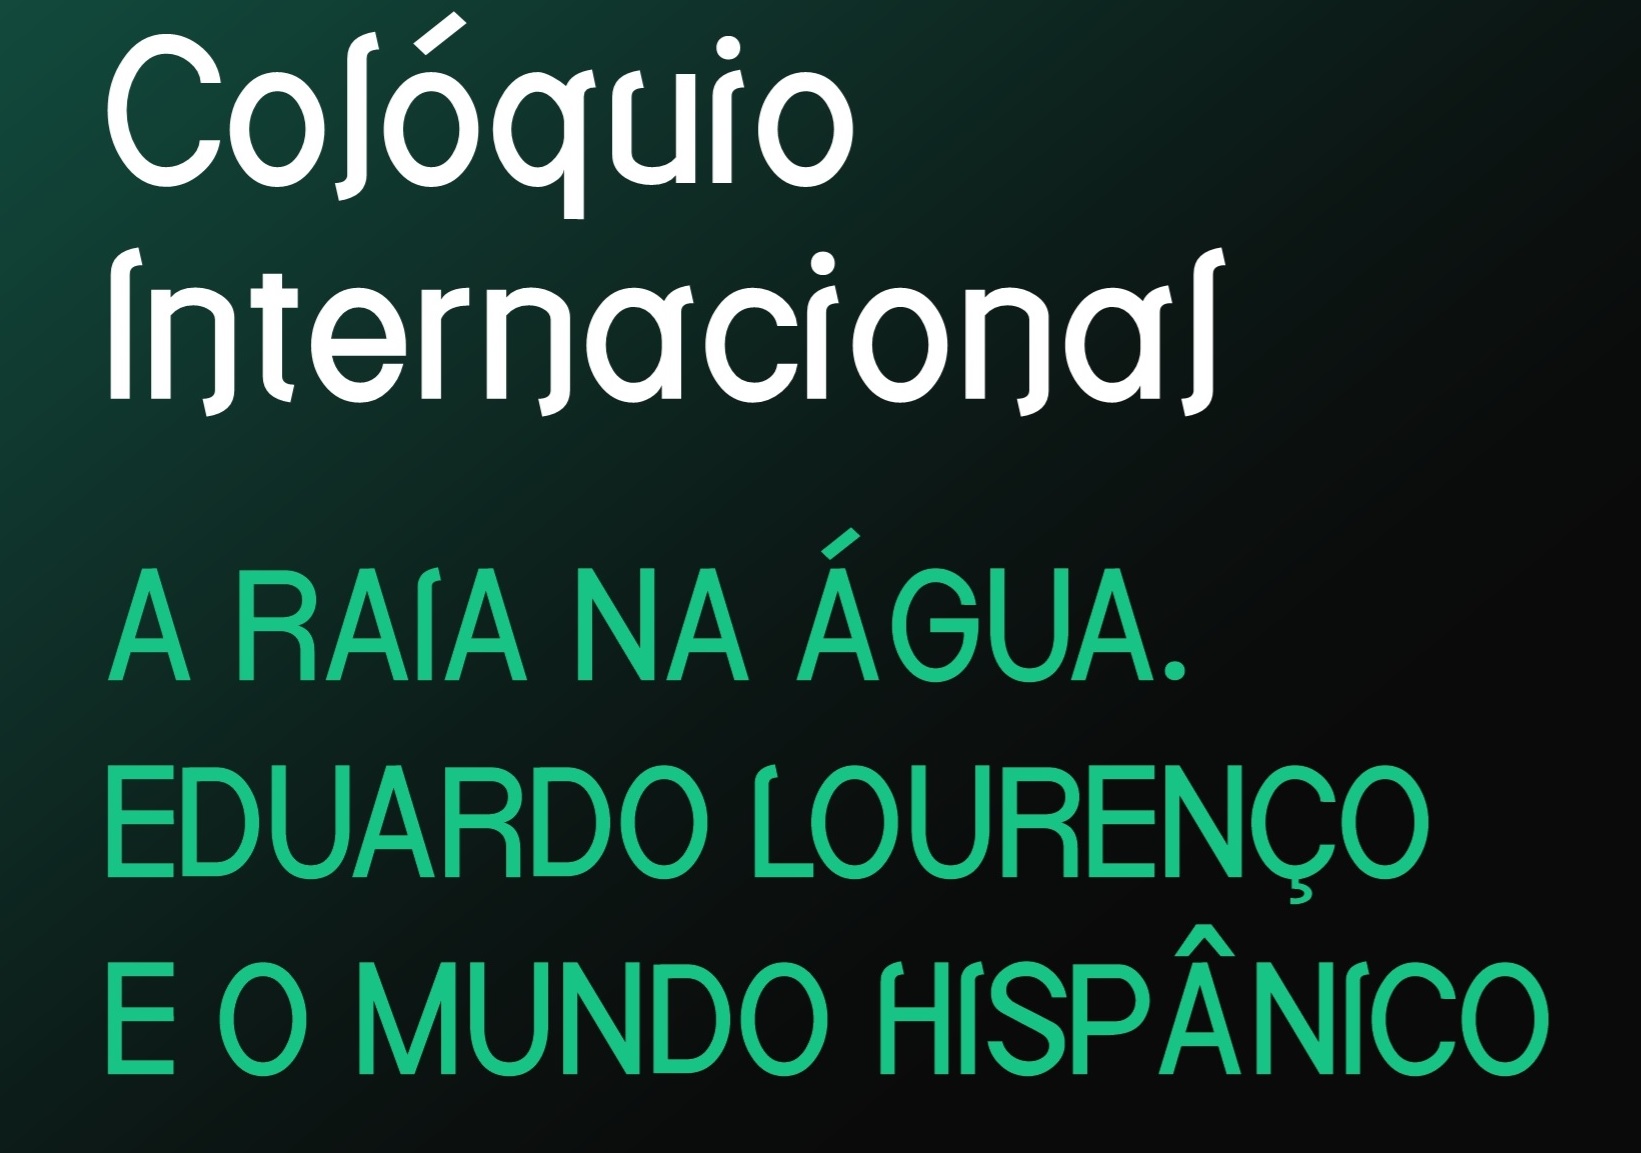 20210426_logo_coloquio_internacional_eduardo_lourenco.jpg